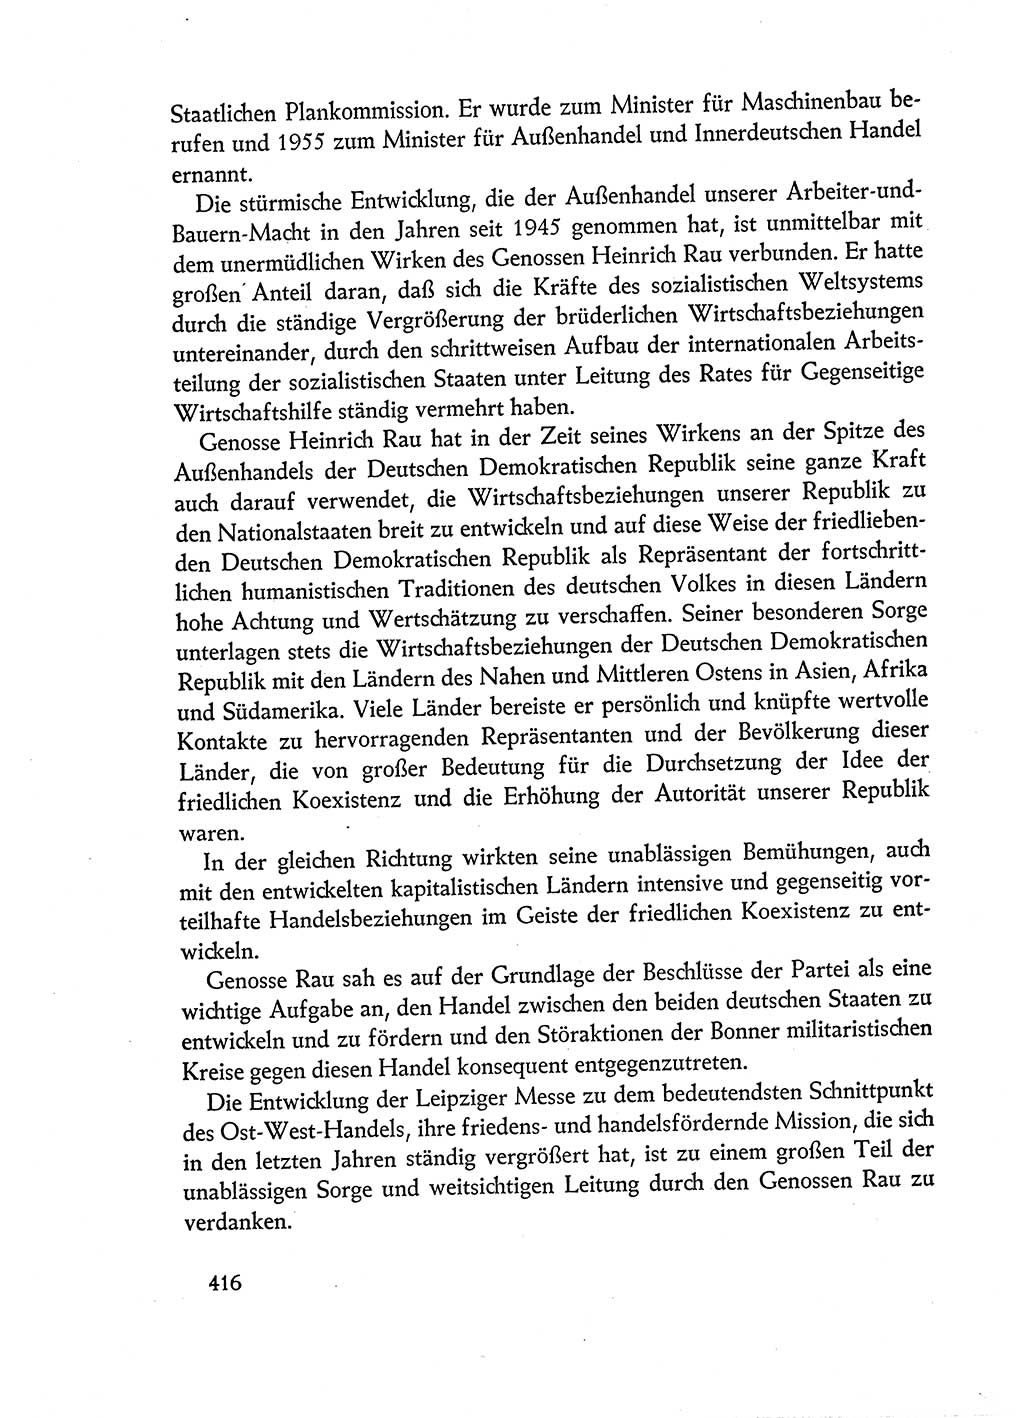 Dokumente der Sozialistischen Einheitspartei Deutschlands (SED) [Deutsche Demokratische Republik (DDR)] 1960-1961, Seite 416 (Dok. SED DDR 1960-1961, S. 416)